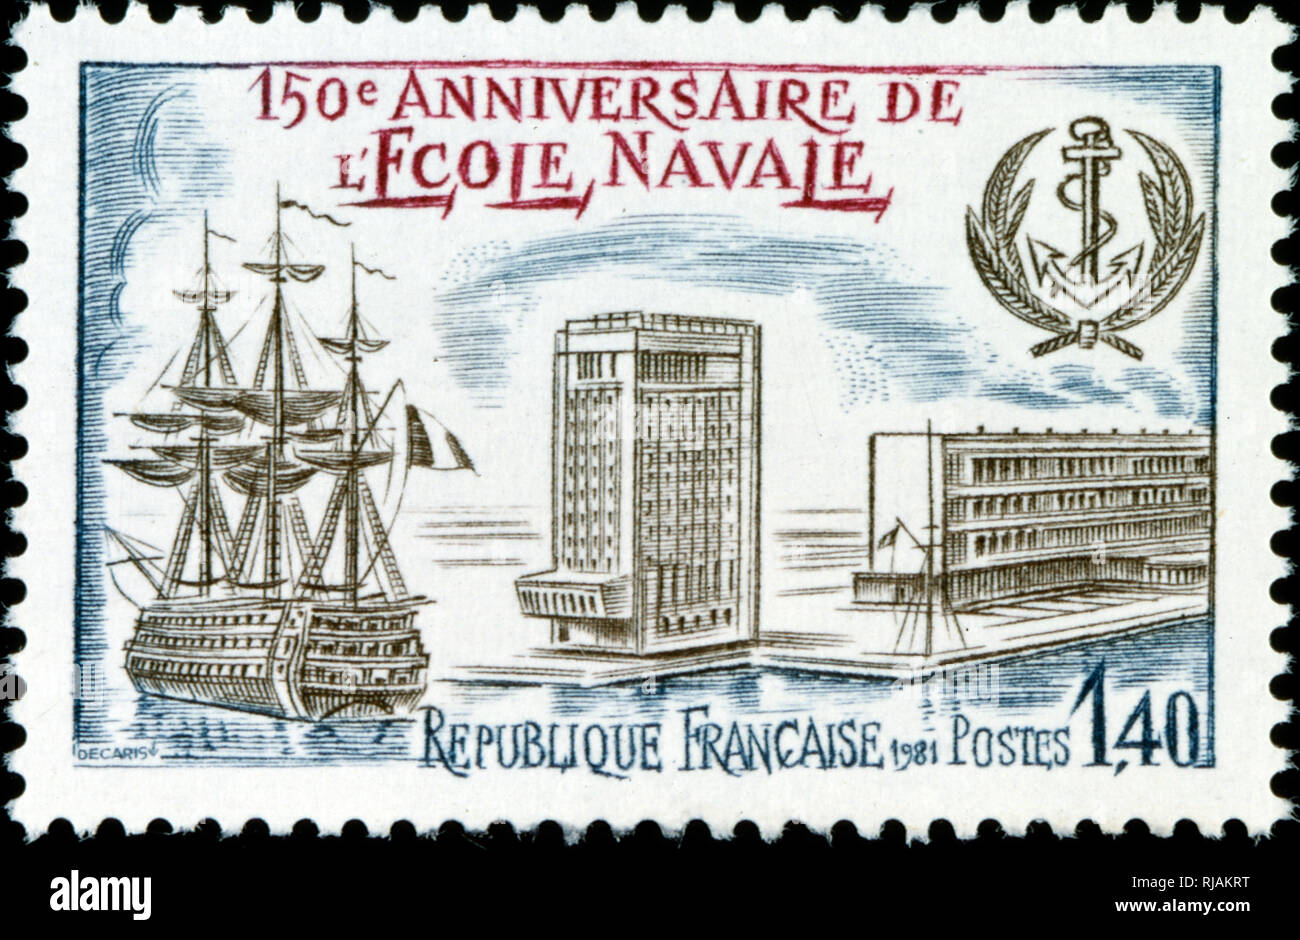 Timbre-poste français célébrant le 150e anniversaire de l'Ecole navale française ; Navalle Academy 1980 Banque D'Images